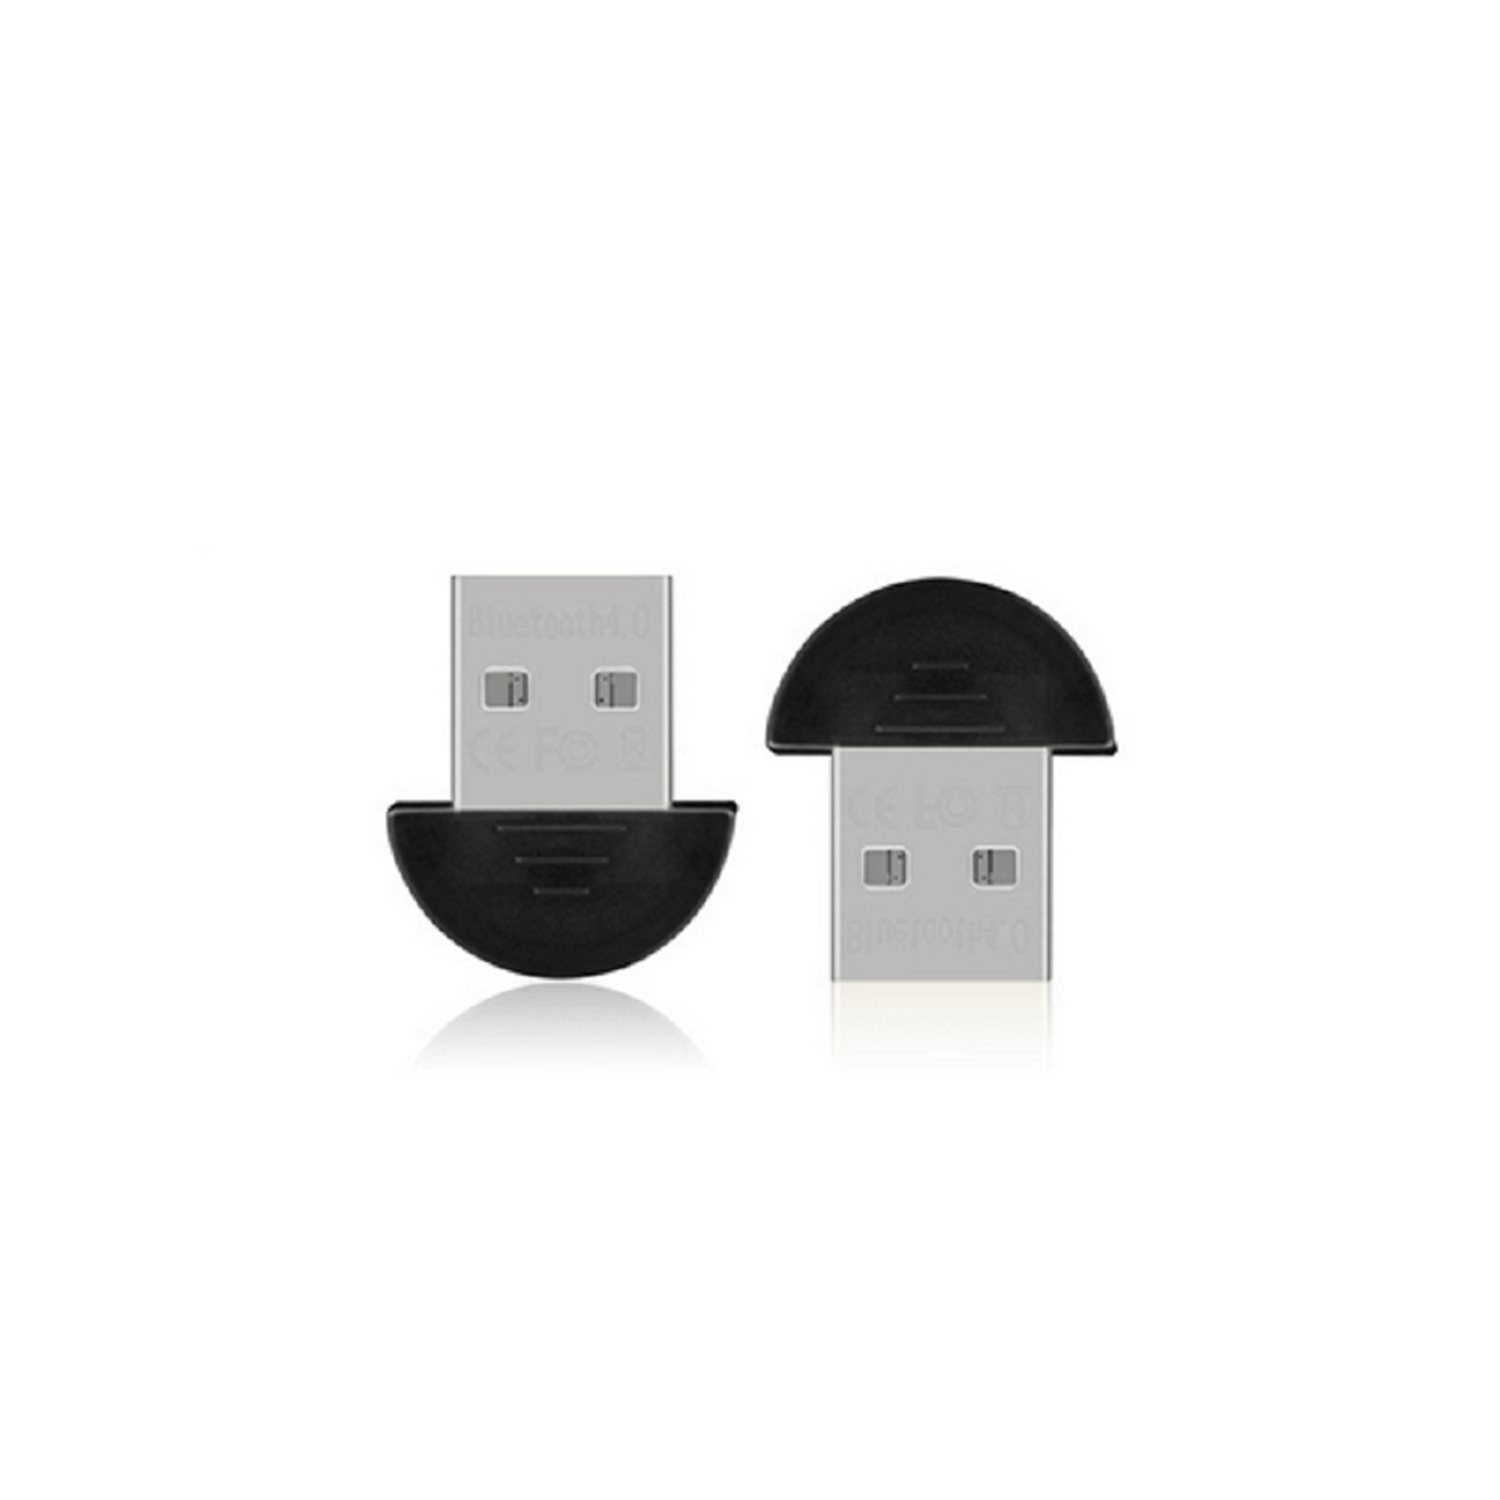  Adaptador Bluetooth USB de largo alcance para PC USB